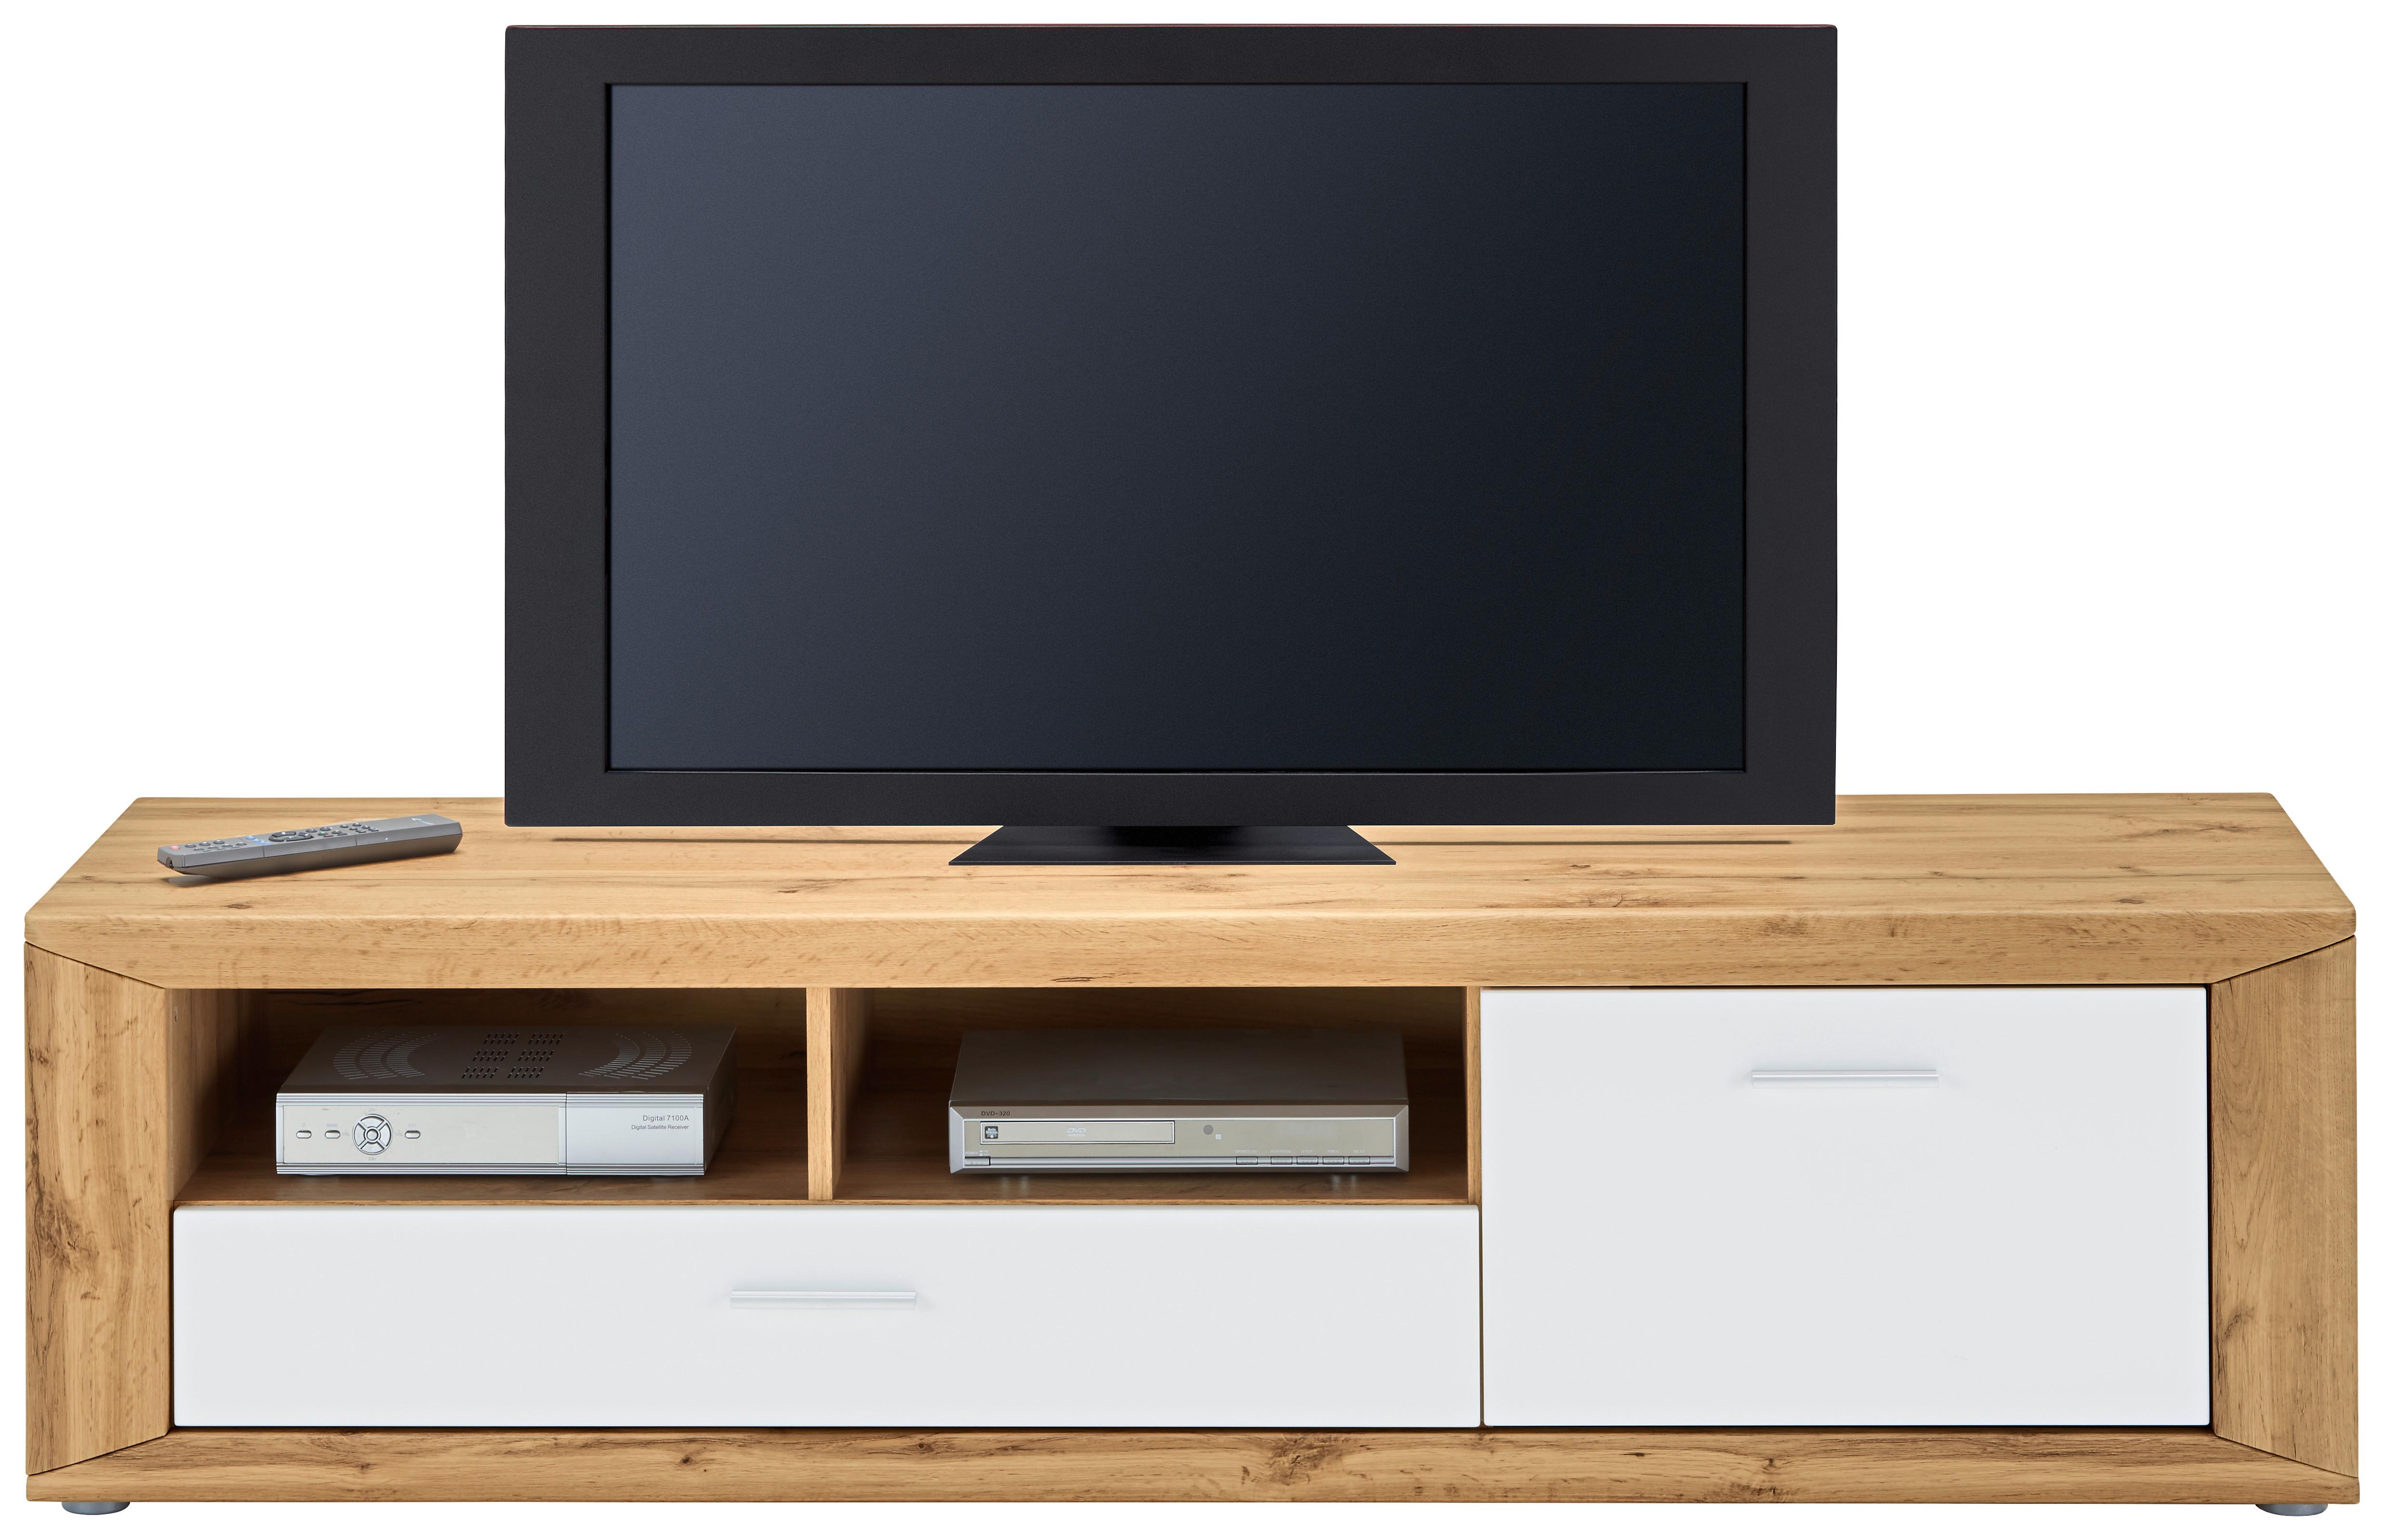 TV-Element in Eichefarben - Weiss/Eichefarben, Konventionell, Holzwerkstoff/Kunststoff (160/42,5/45cm) - Modern Living